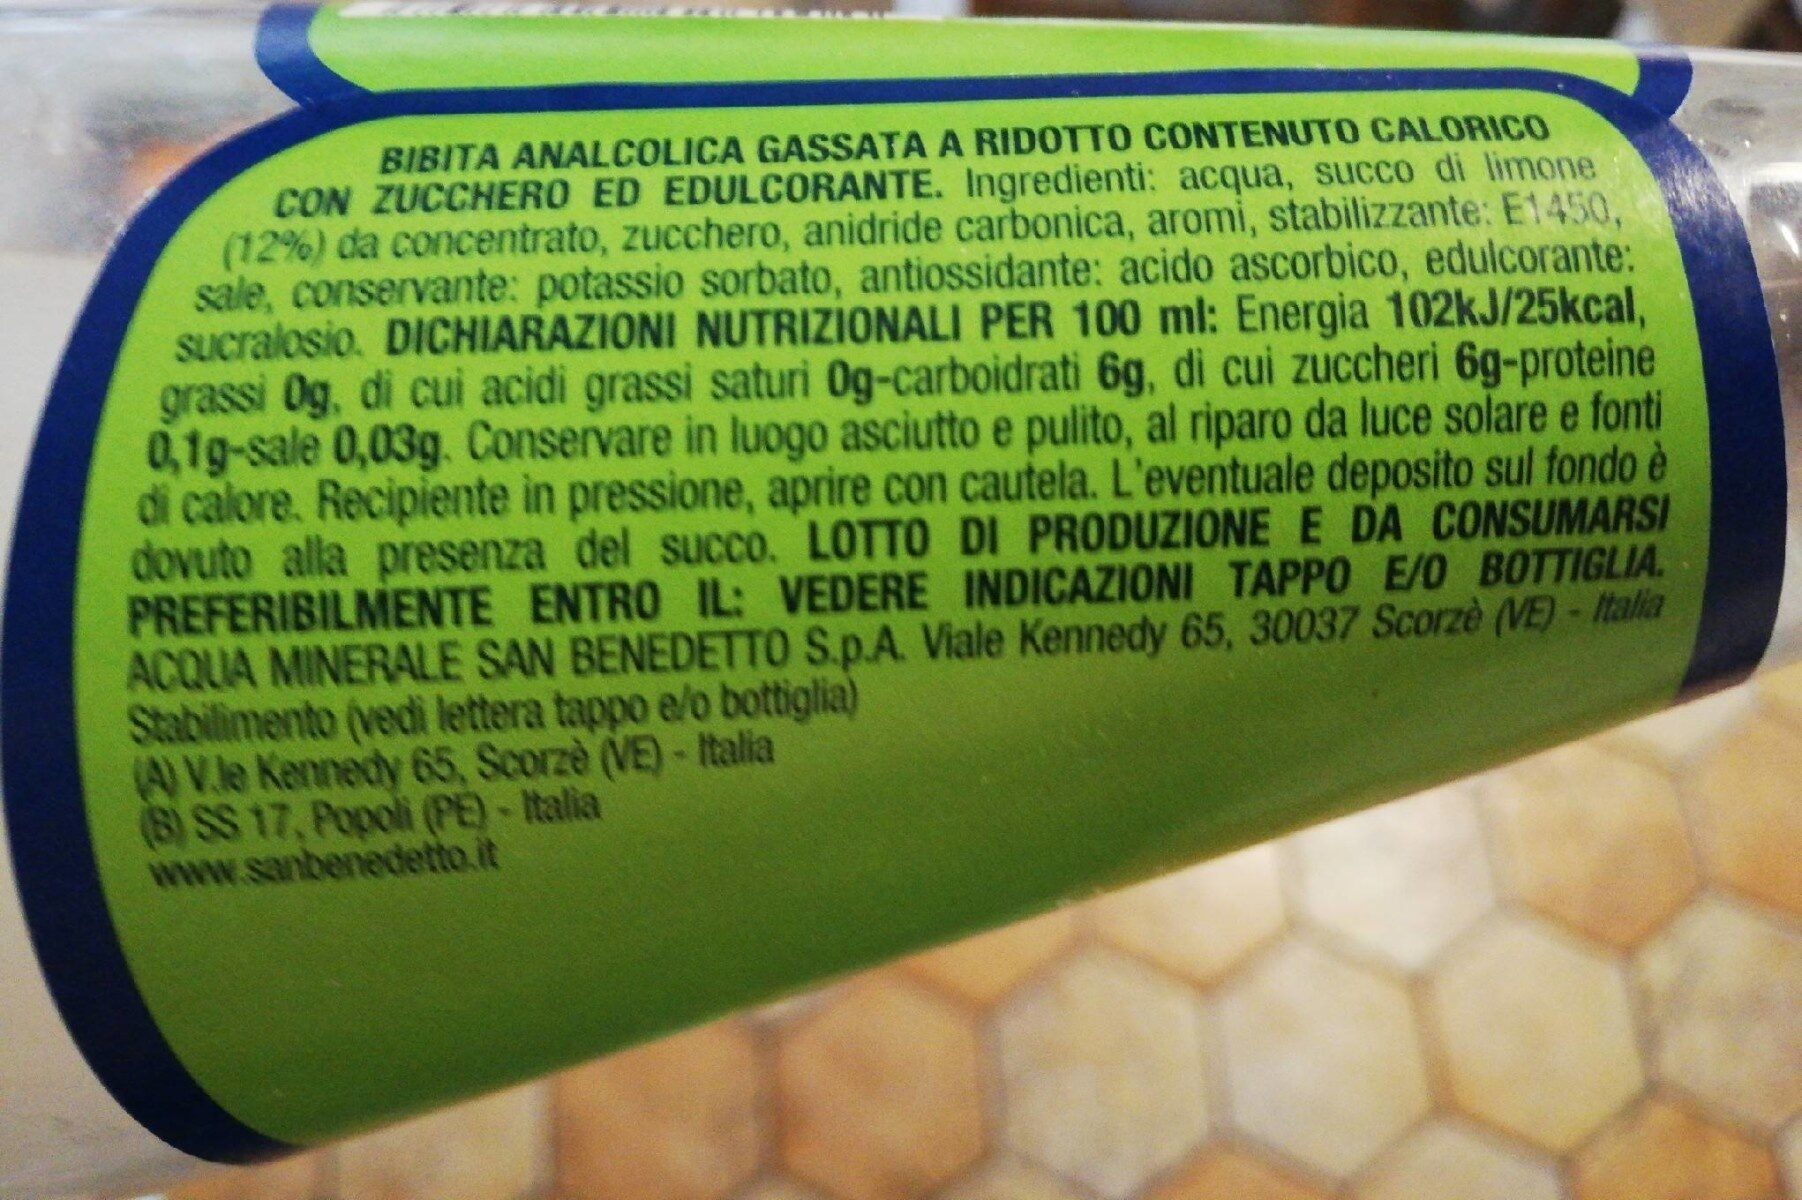 Limonata Pr. sprem. cl75 S. bened - Tableau nutritionnel